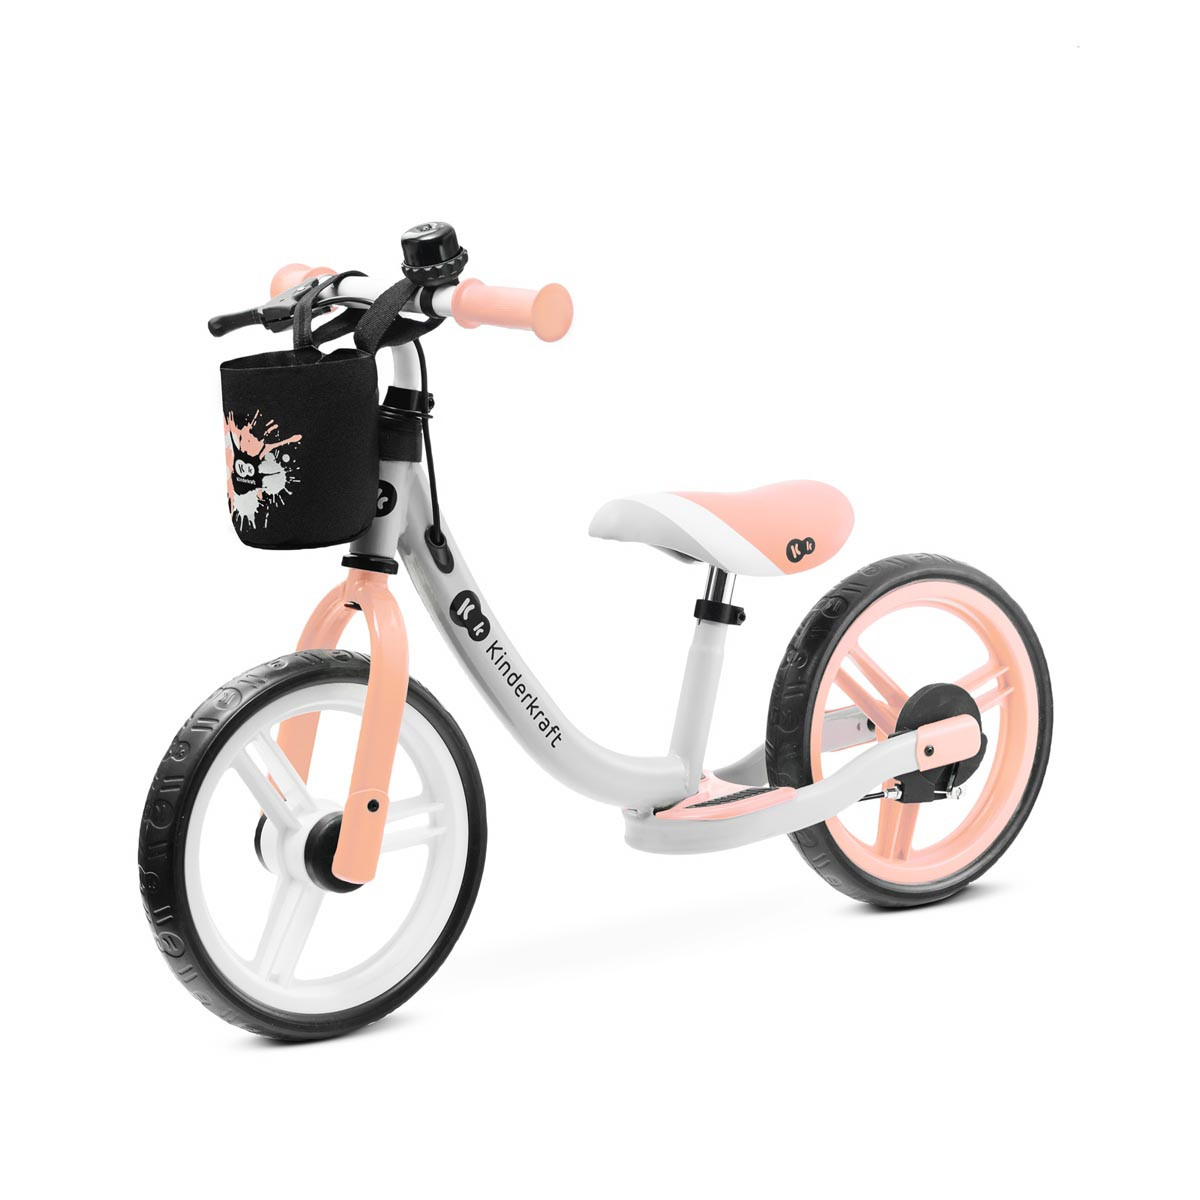 Bicicleta de equilibrio space sin pedales en color peach coral